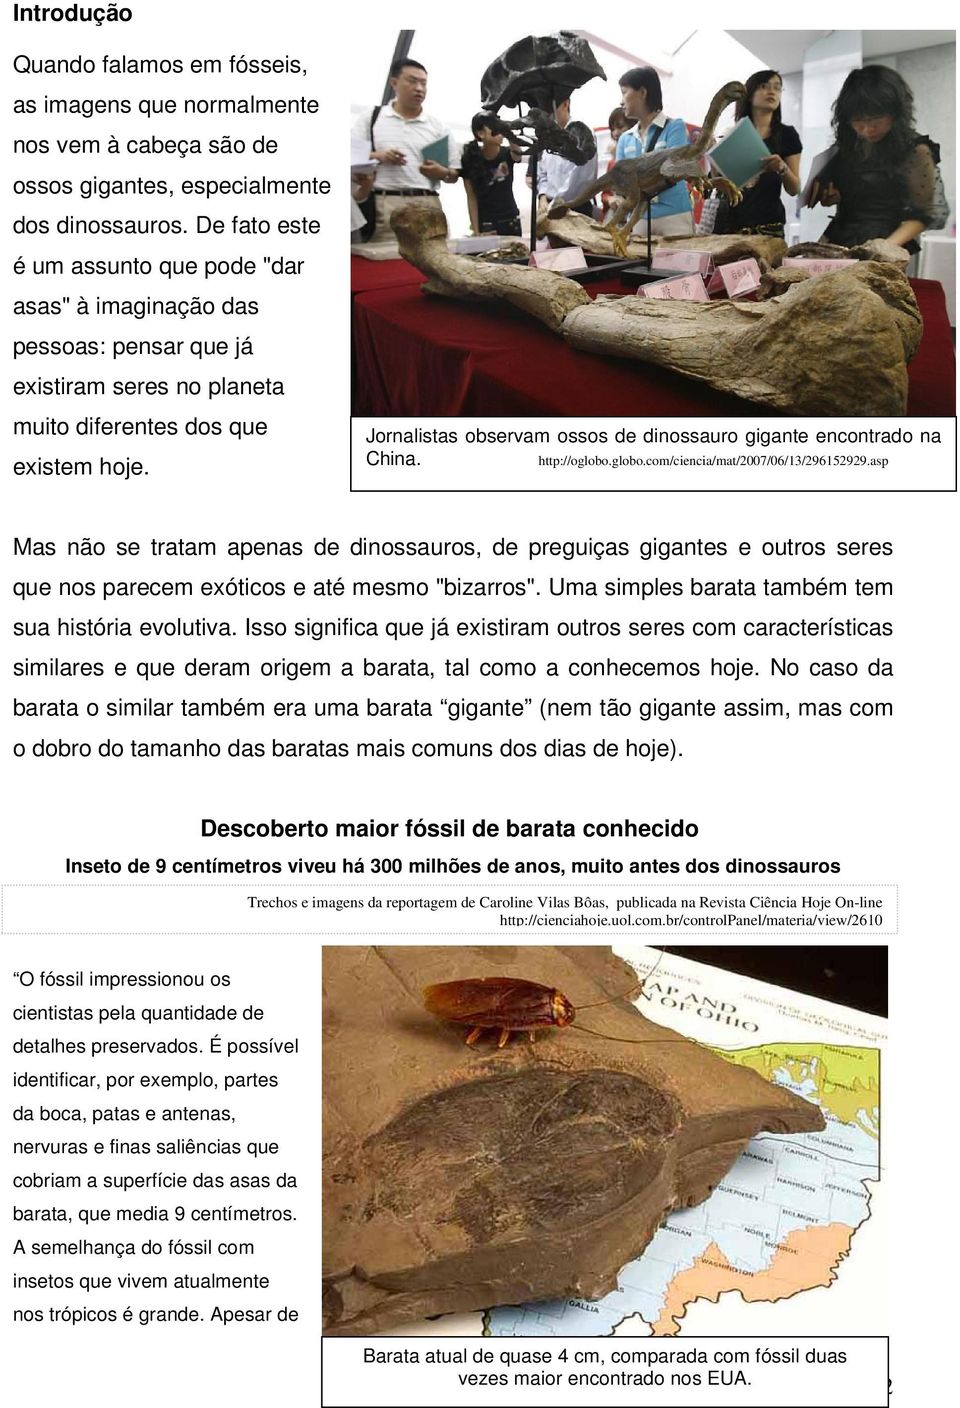 Jornalistas observam ossos de dinossauro gigante encontrado na China. http://oglobo.globo.com/ciencia/mat/2007/06/13/296152929.